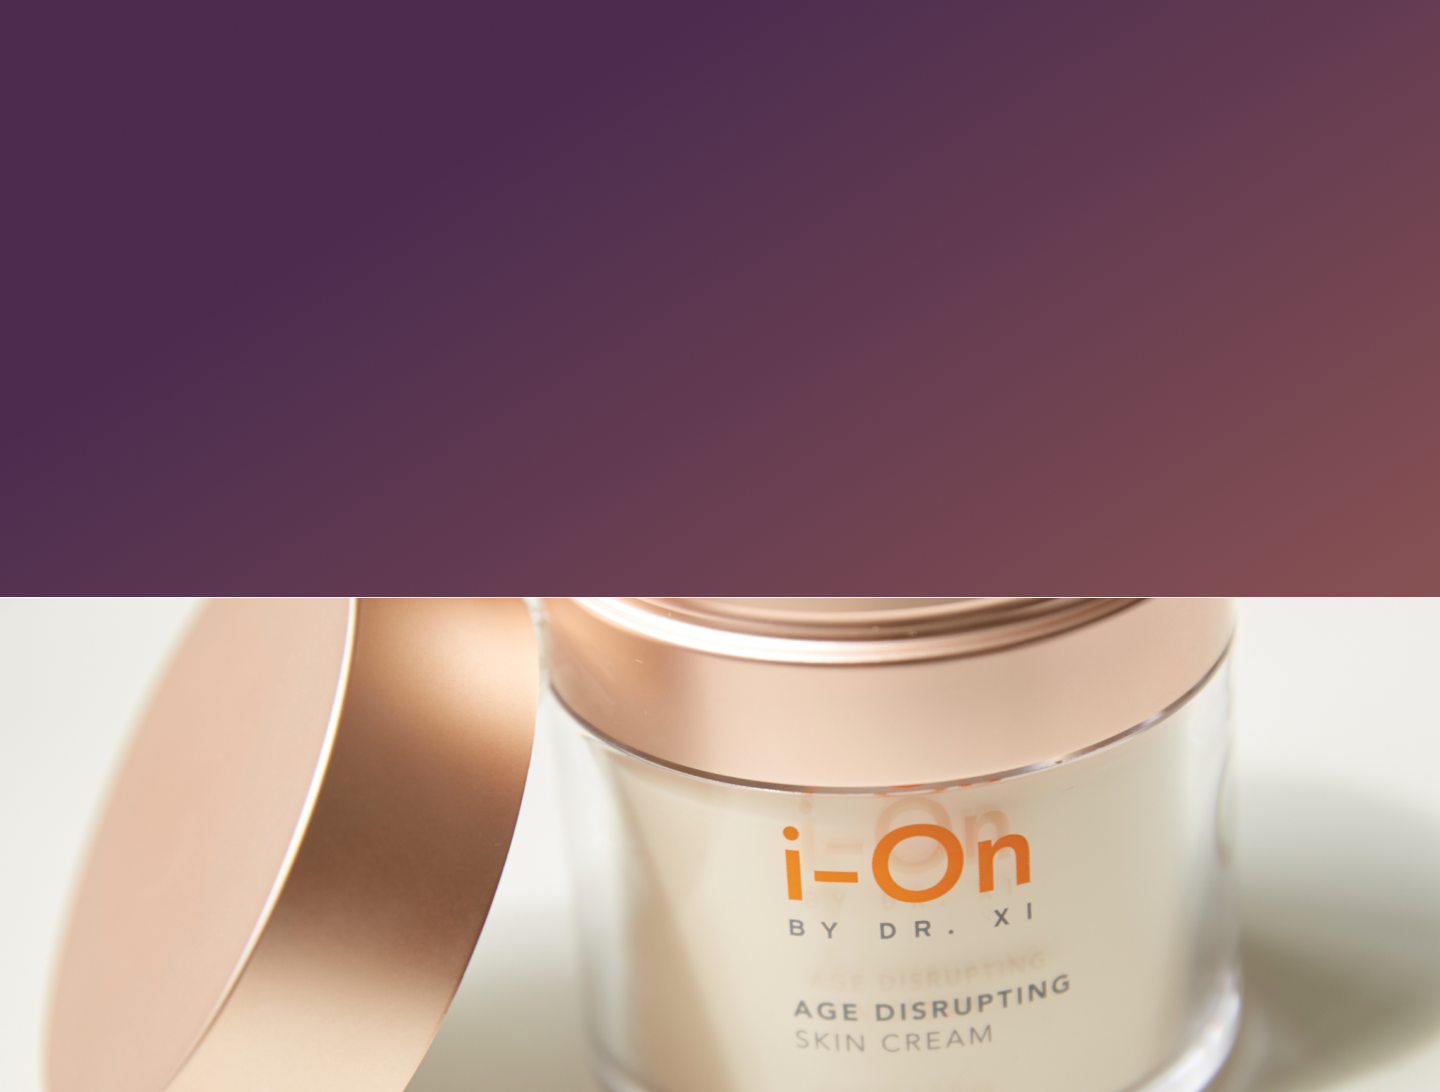 Enter i-On’s Skin Cream Giveaway!